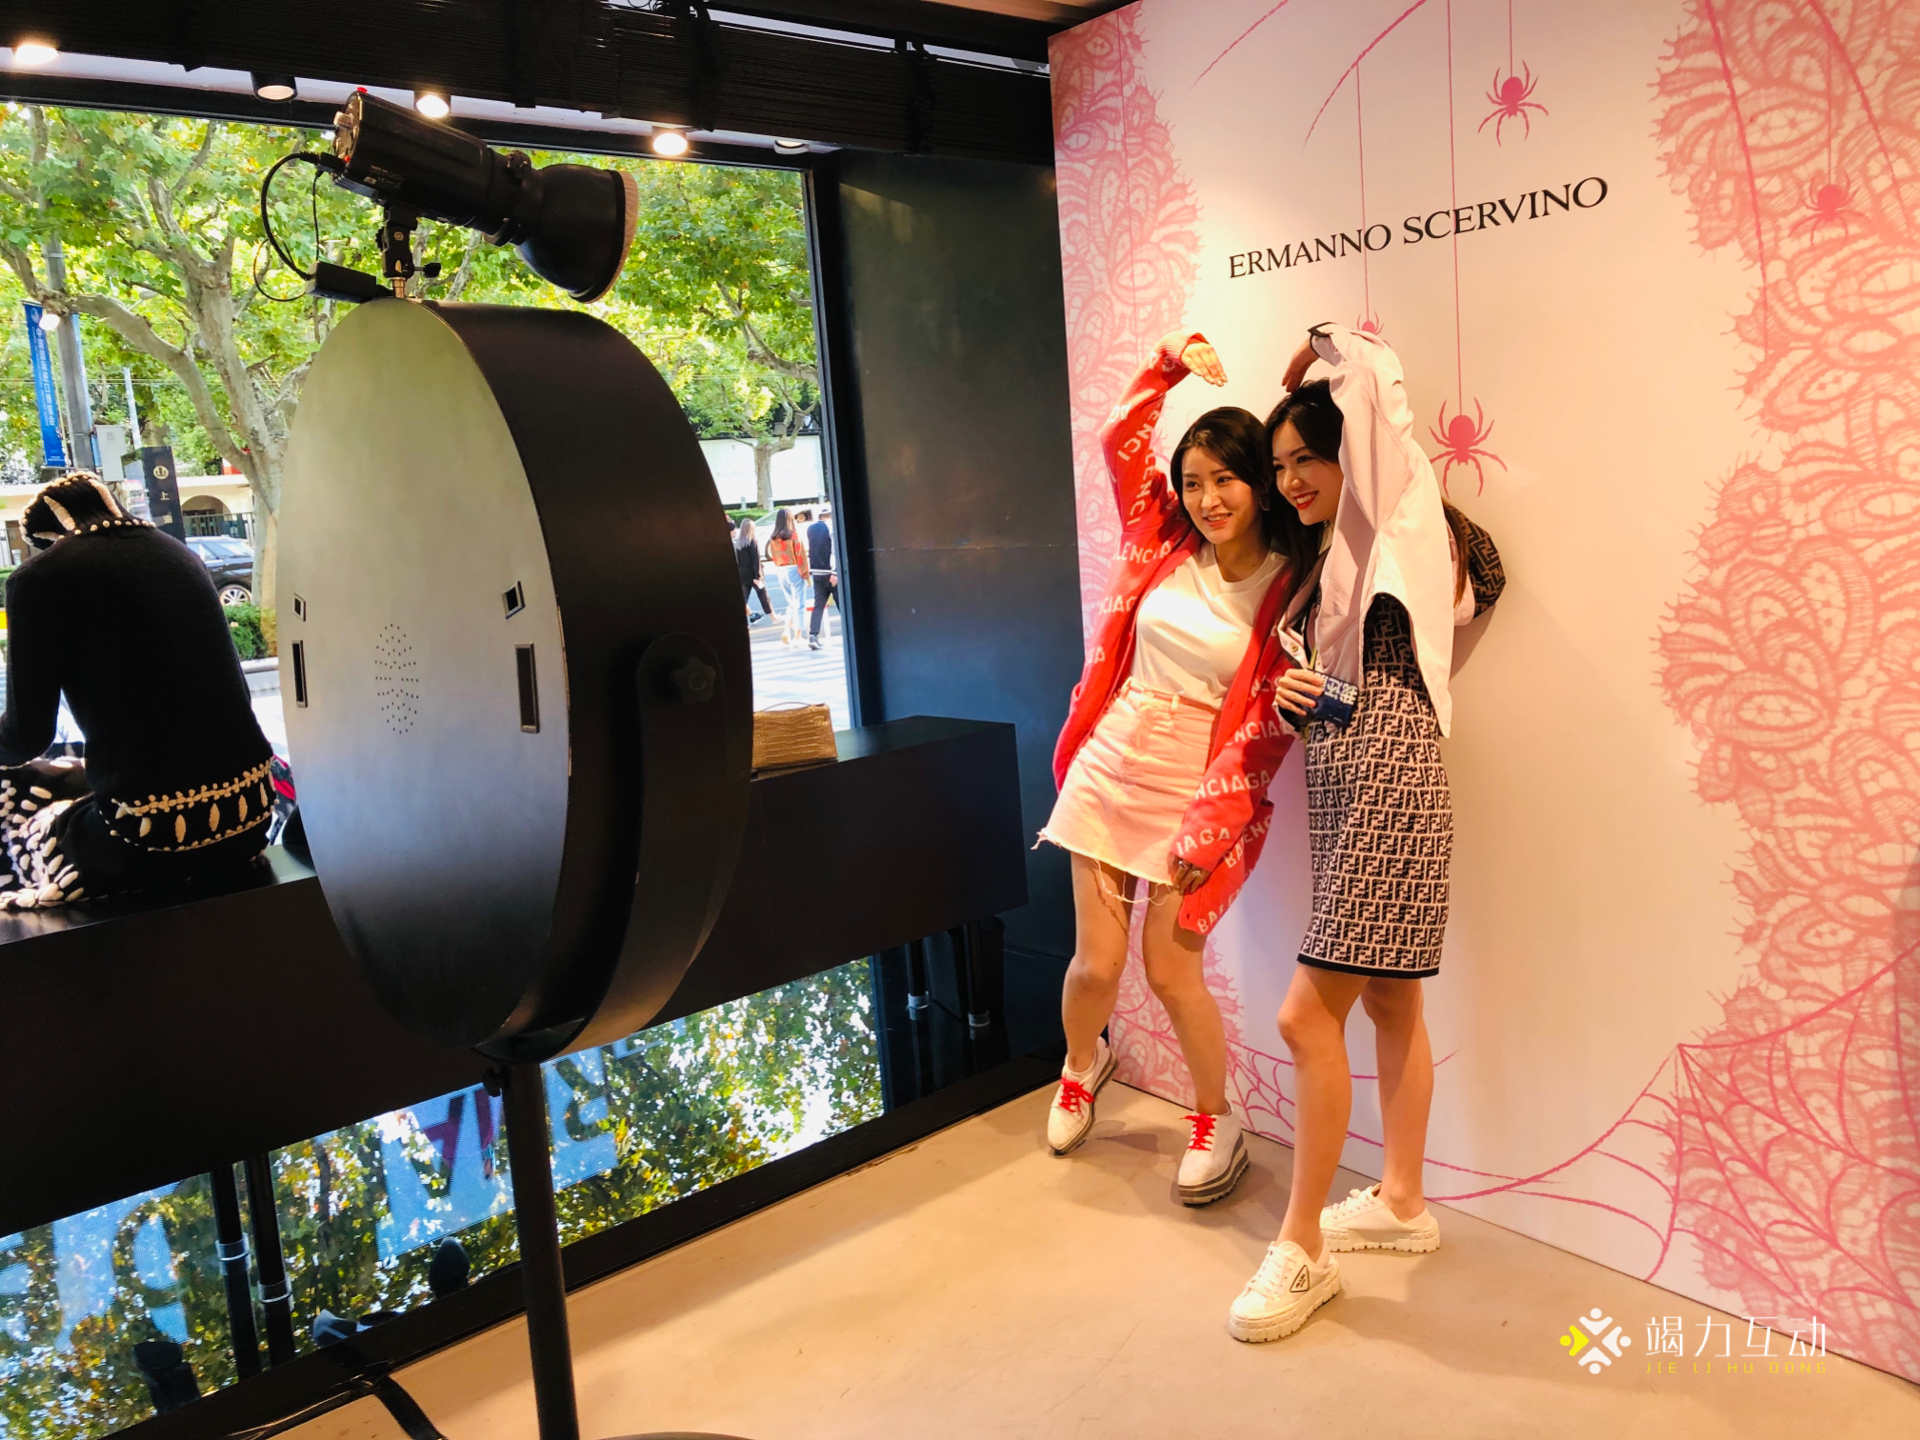 高端活动互动装置魔镜自助拍照装置上海站阿玛尼新品